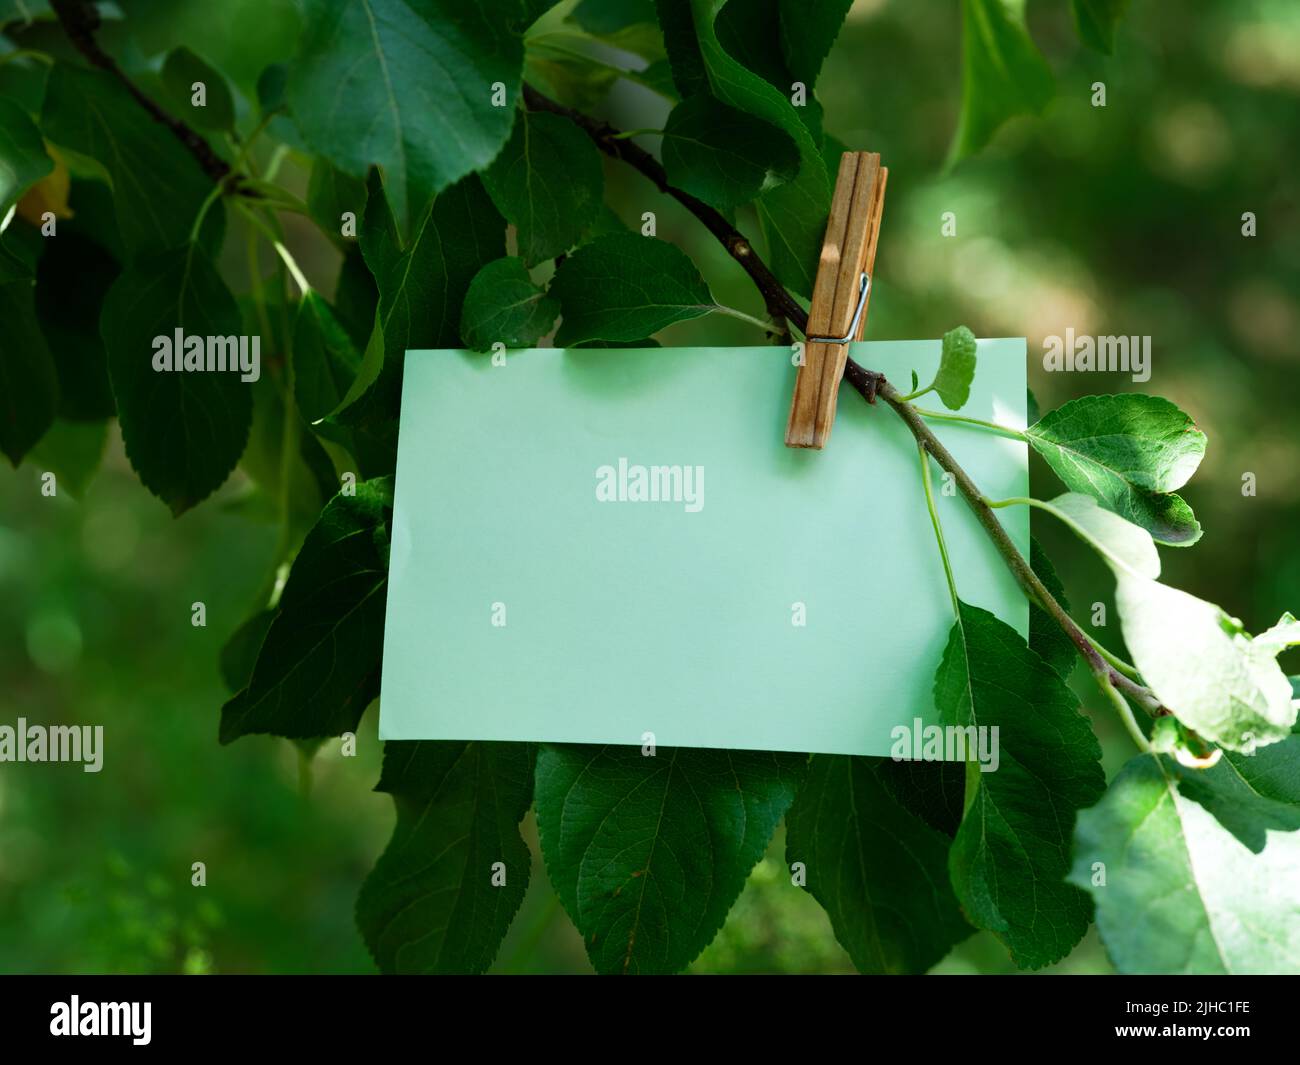 Una nota de papel verde que cuelga de una rama del árbol. Primer plano. Foto de stock